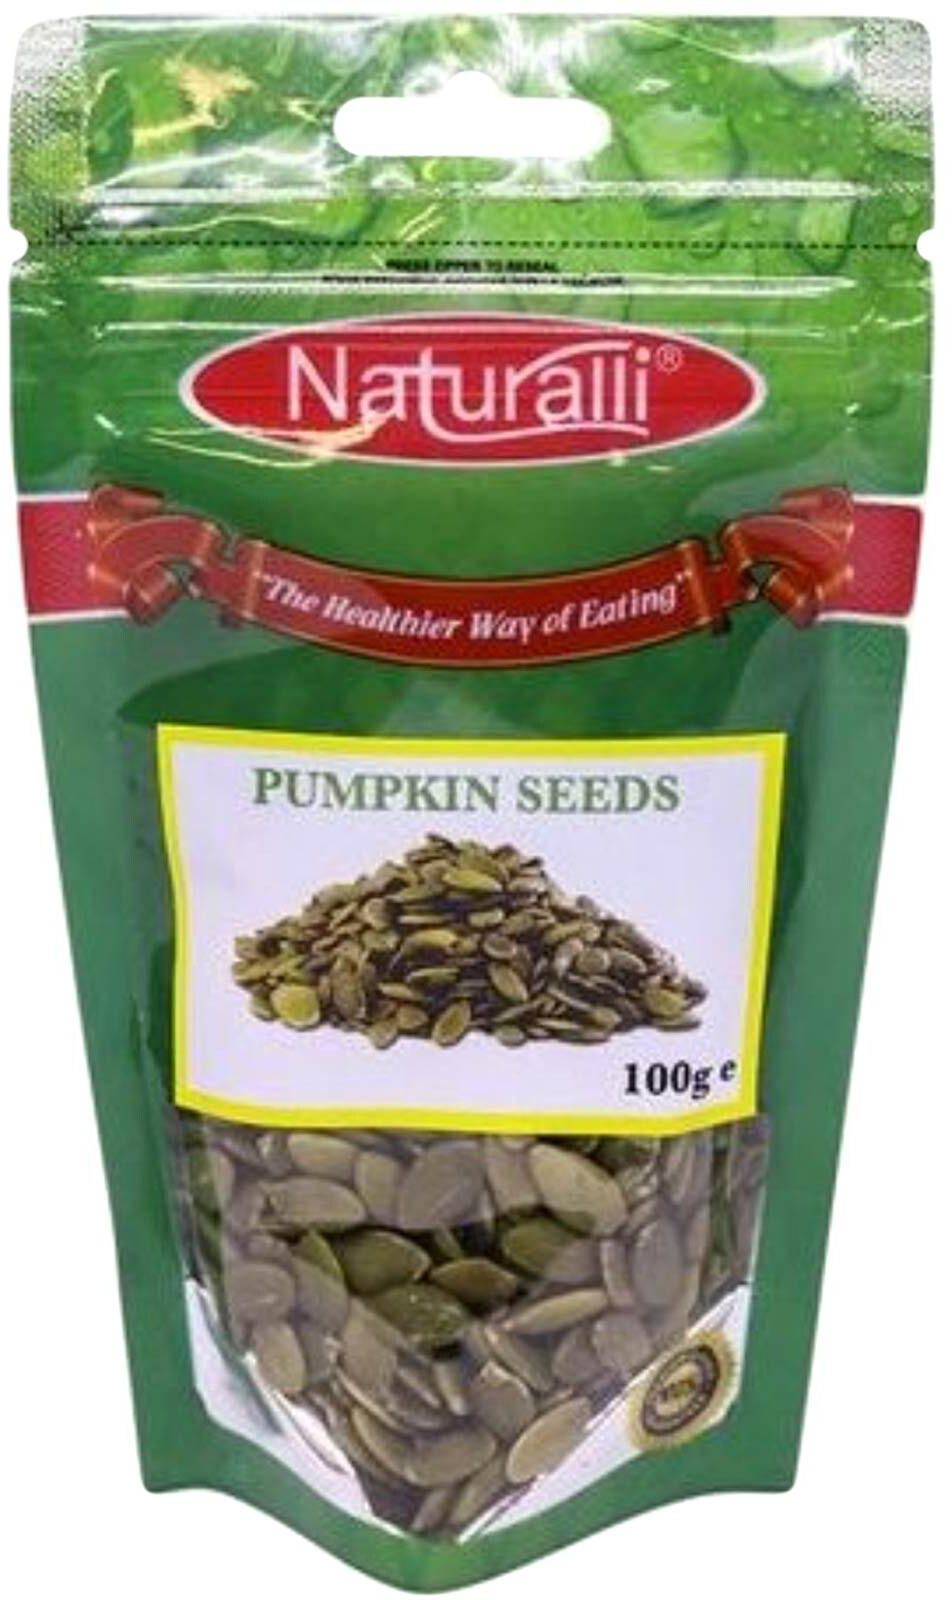 Naturalli Pumpkin Seeds 100g